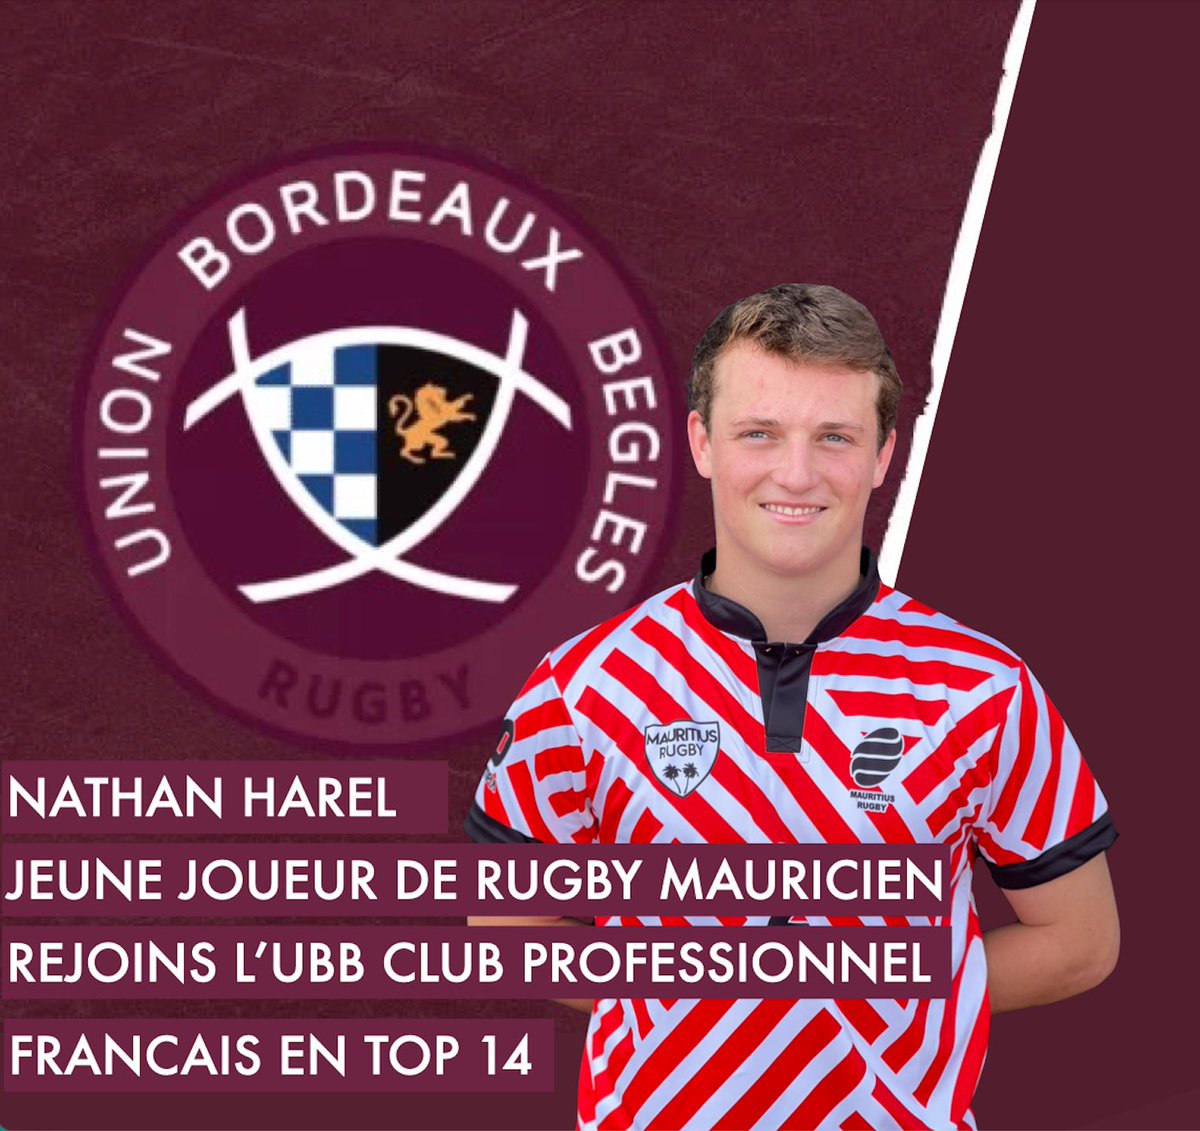 Un de nos jeunes joueurs Nathan Harel formé sur l’Ile Maurice 🇲🇺 a rejoins le club professionnel français de rugby de @ubbrugby en septembre. Une immense fierté pour son club formateur et le rugby mauricien:) #mauritiusrugby